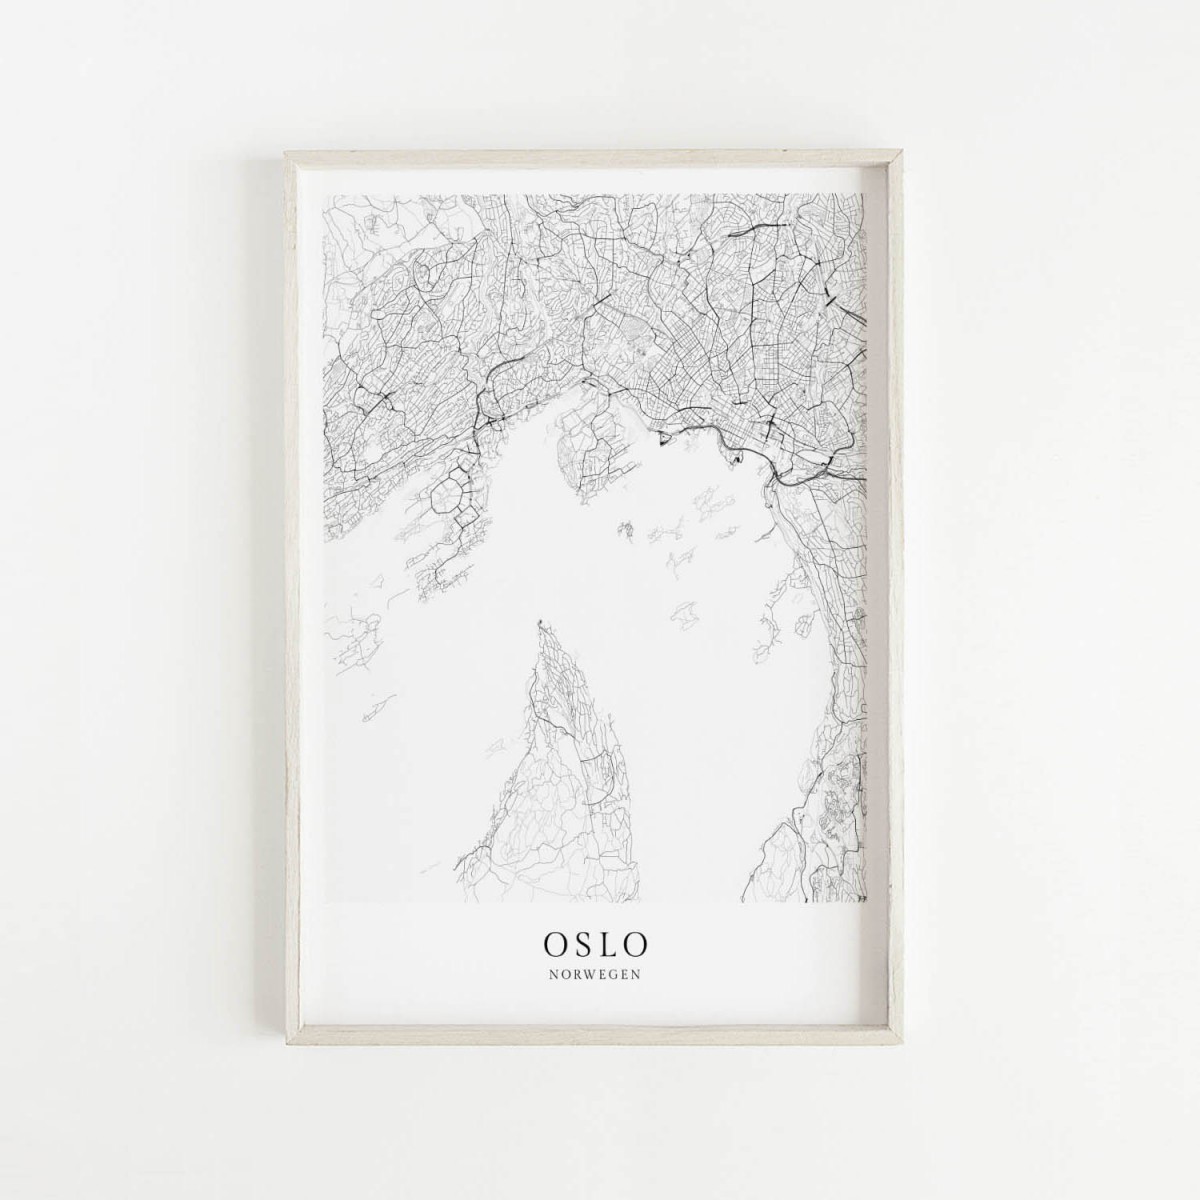 OSLO als hochwertiges Poster im skandinavischen Stil von Skanemarie +++ Geschenkidee